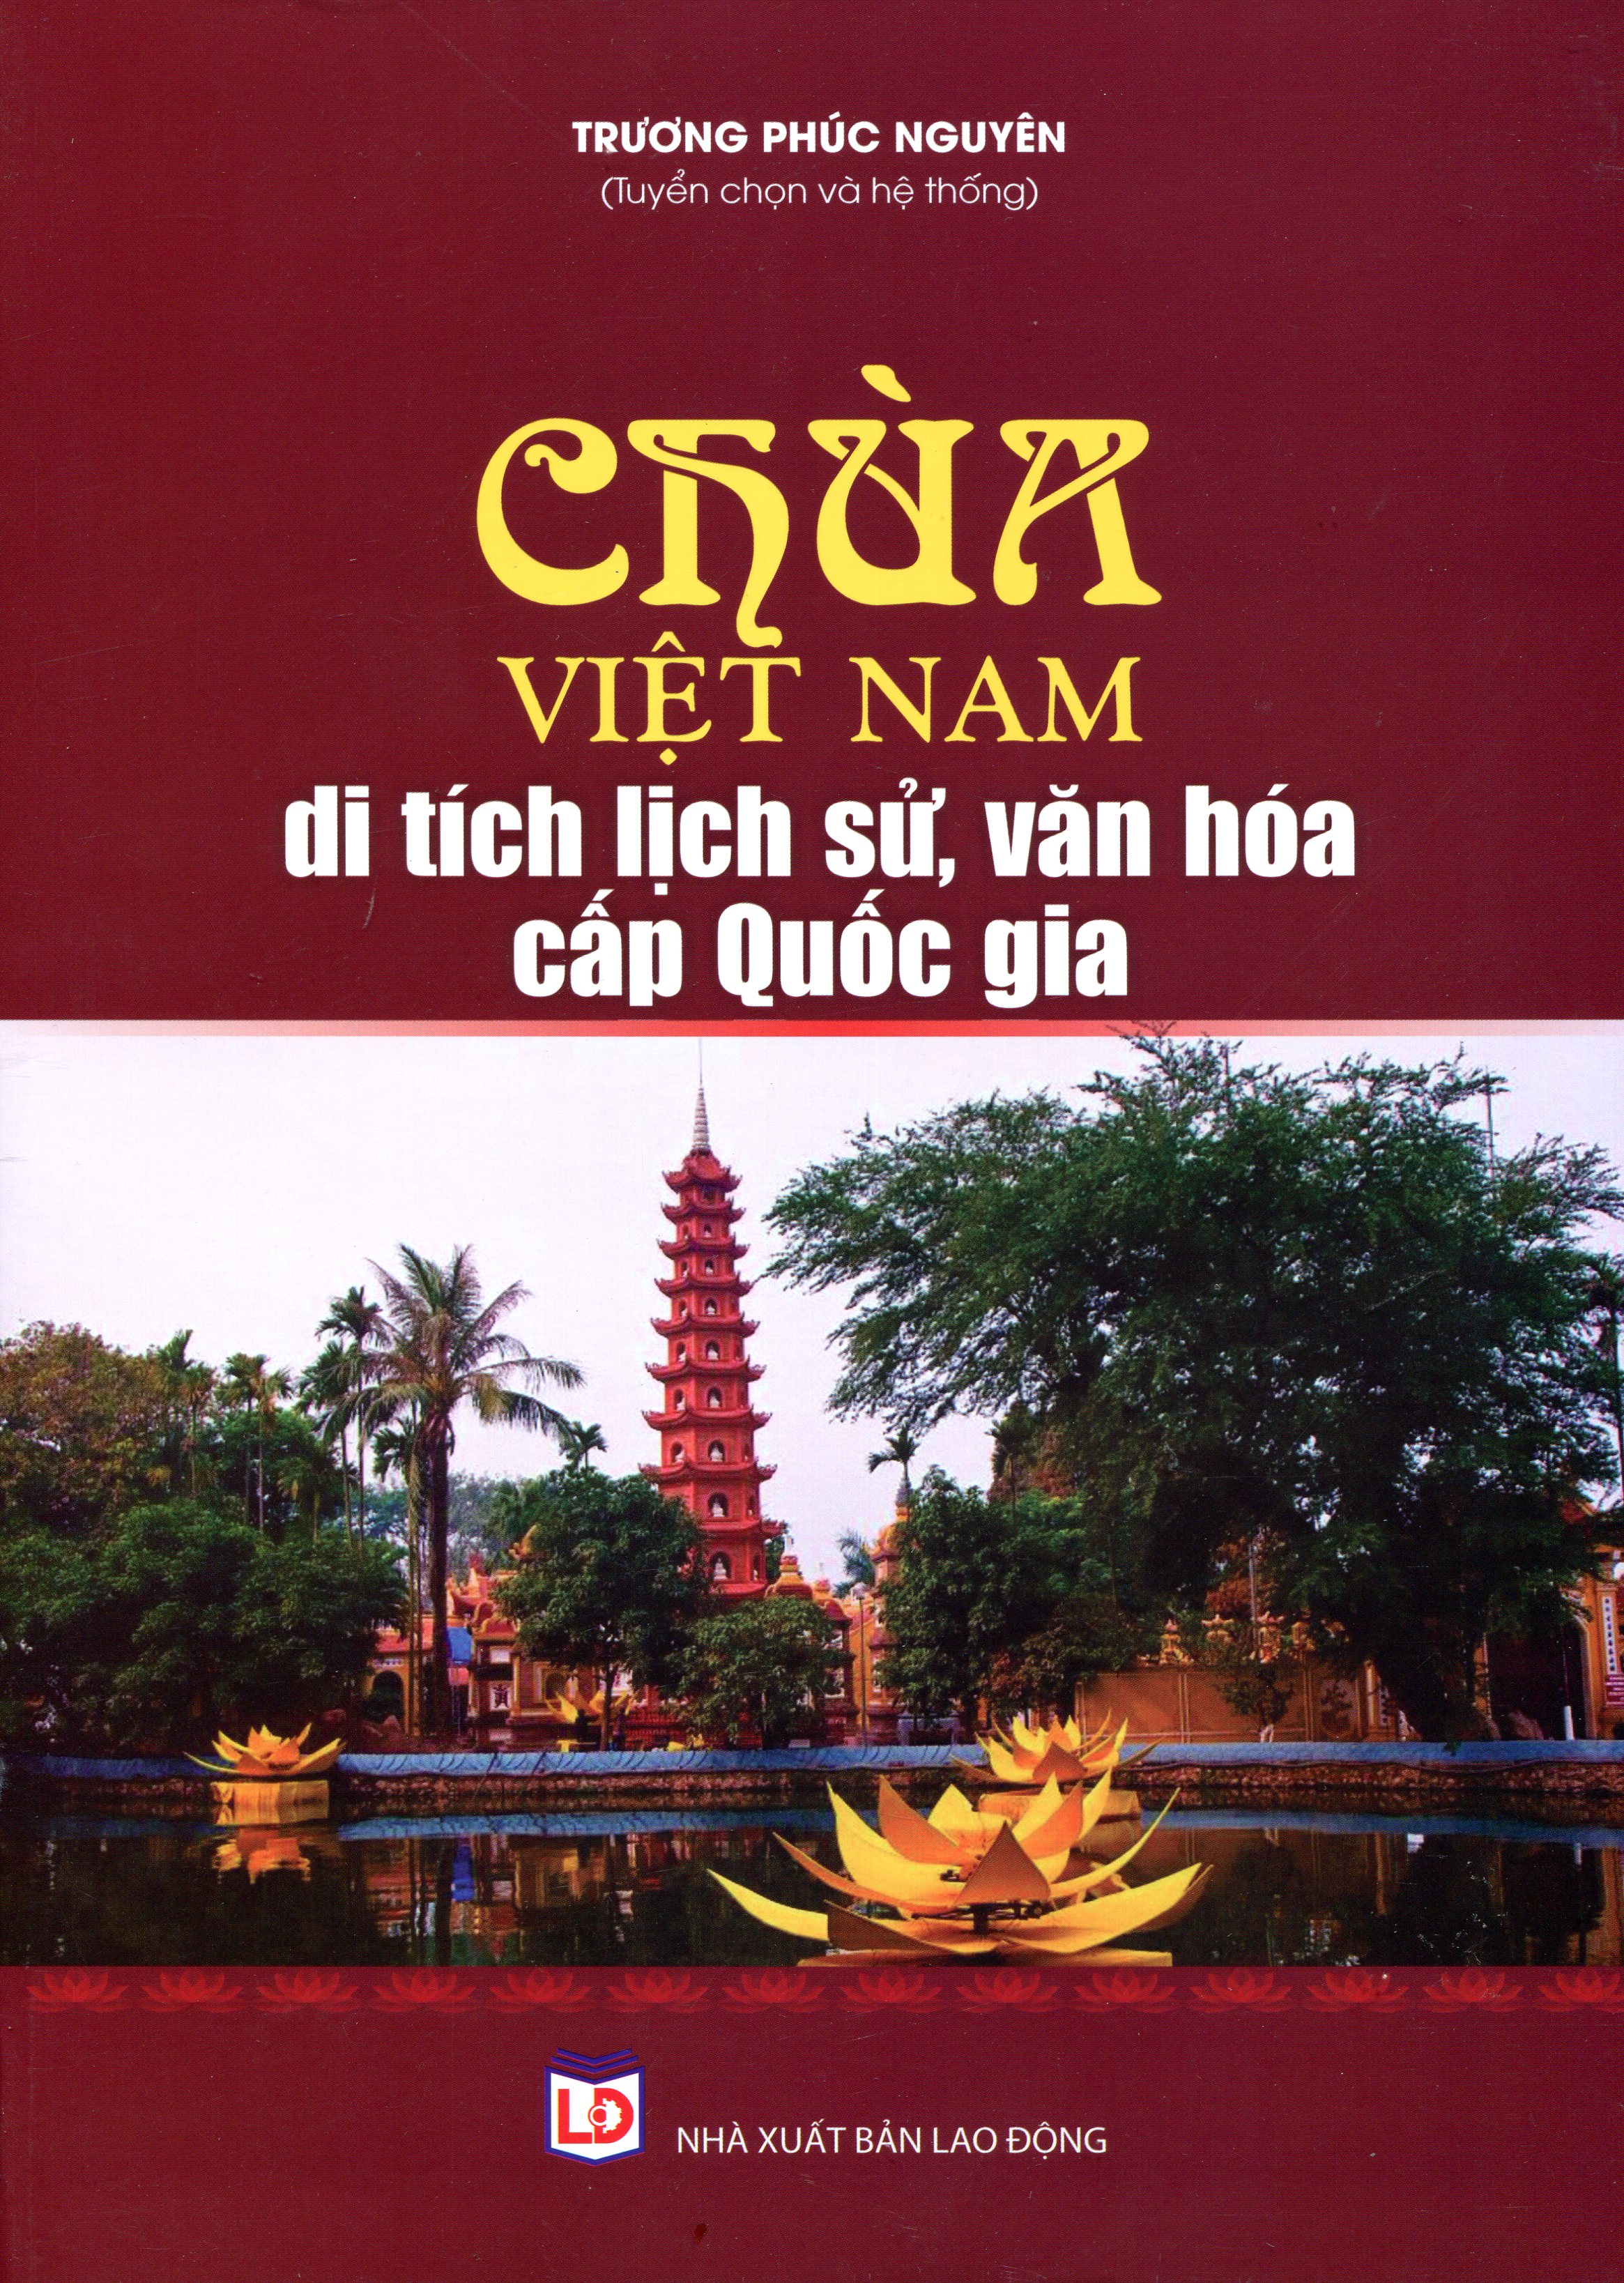 Chùa Việt Nam_Di Tích Lịch Sử, Văn Hóa Cấp Quốc Gia